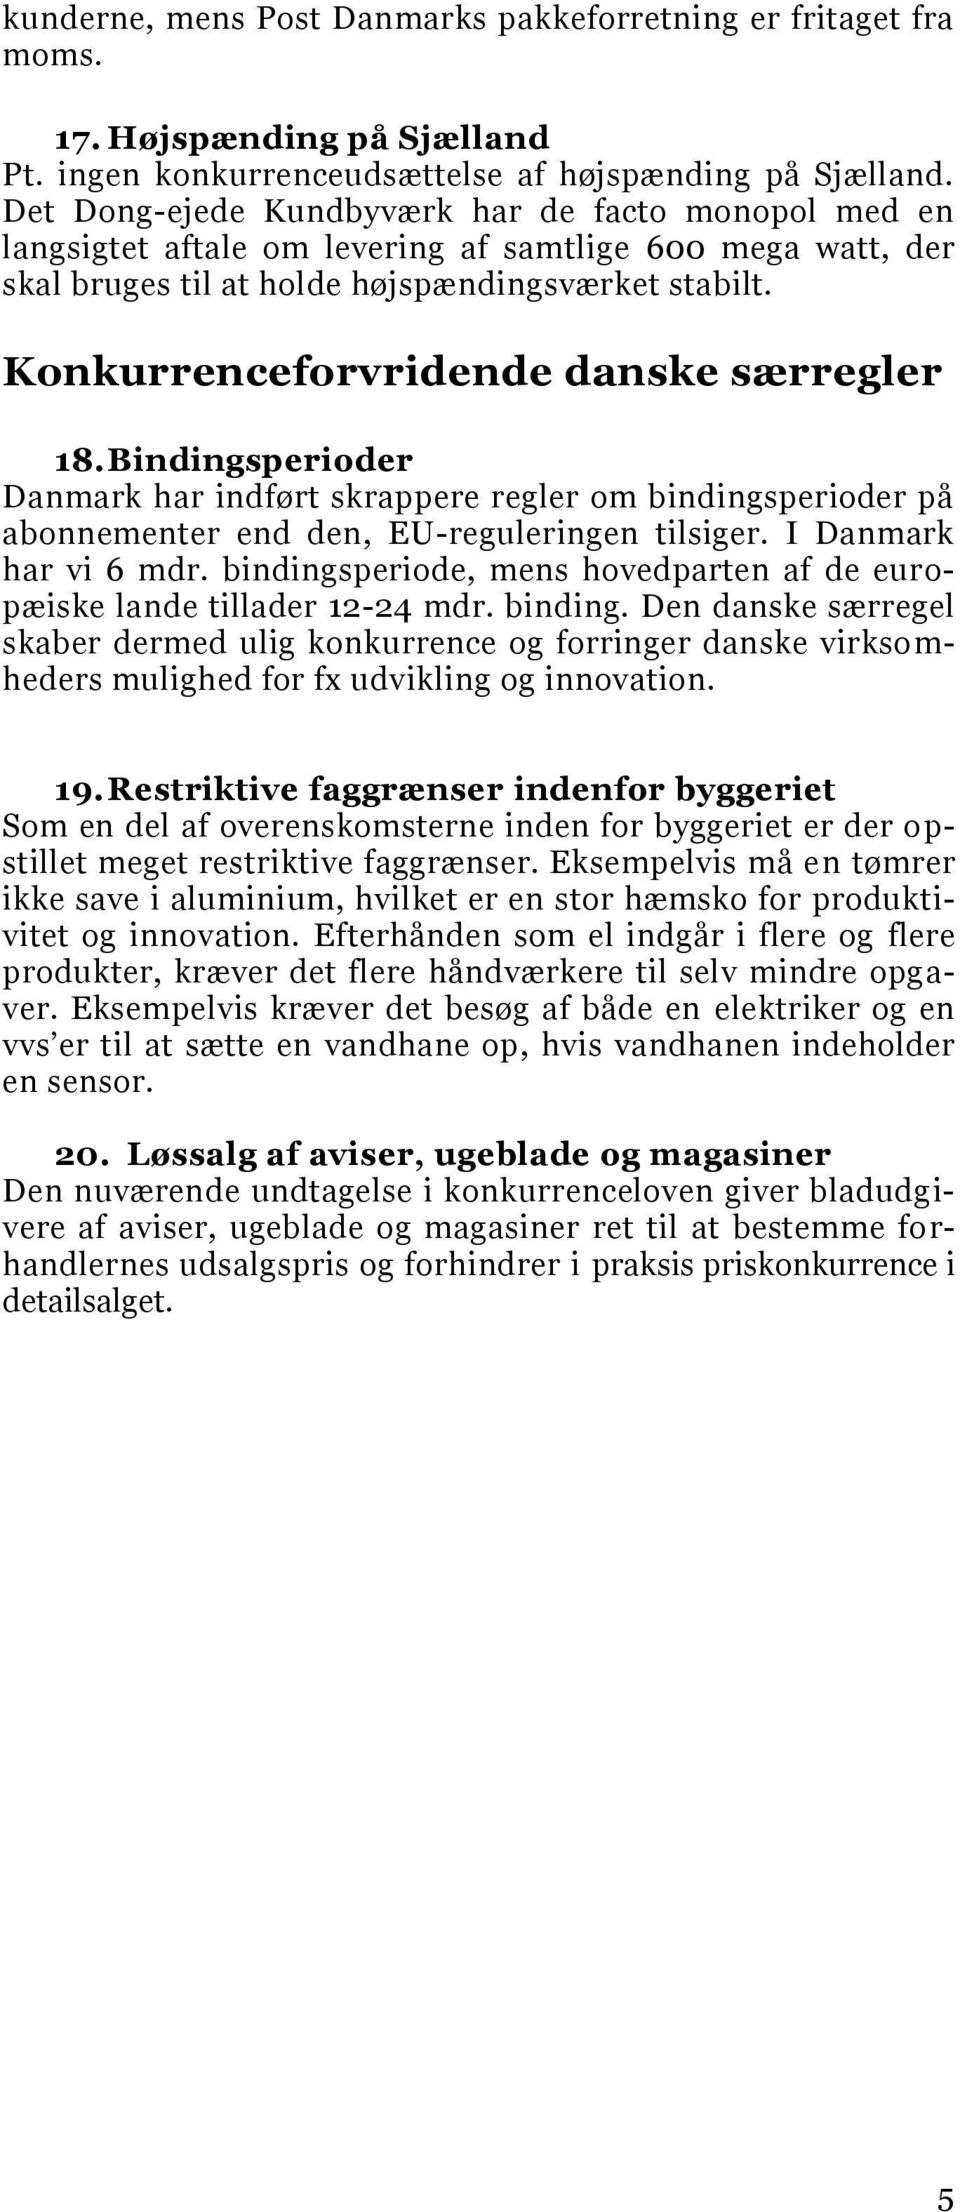 Konkurrenceforvridende danske særregler 18. Bindingsperioder Danmark har indført skrappere regler om bindingsperioder på abonnementer end den, EU-reguleringen tilsiger. I Danmark har vi 6 mdr.